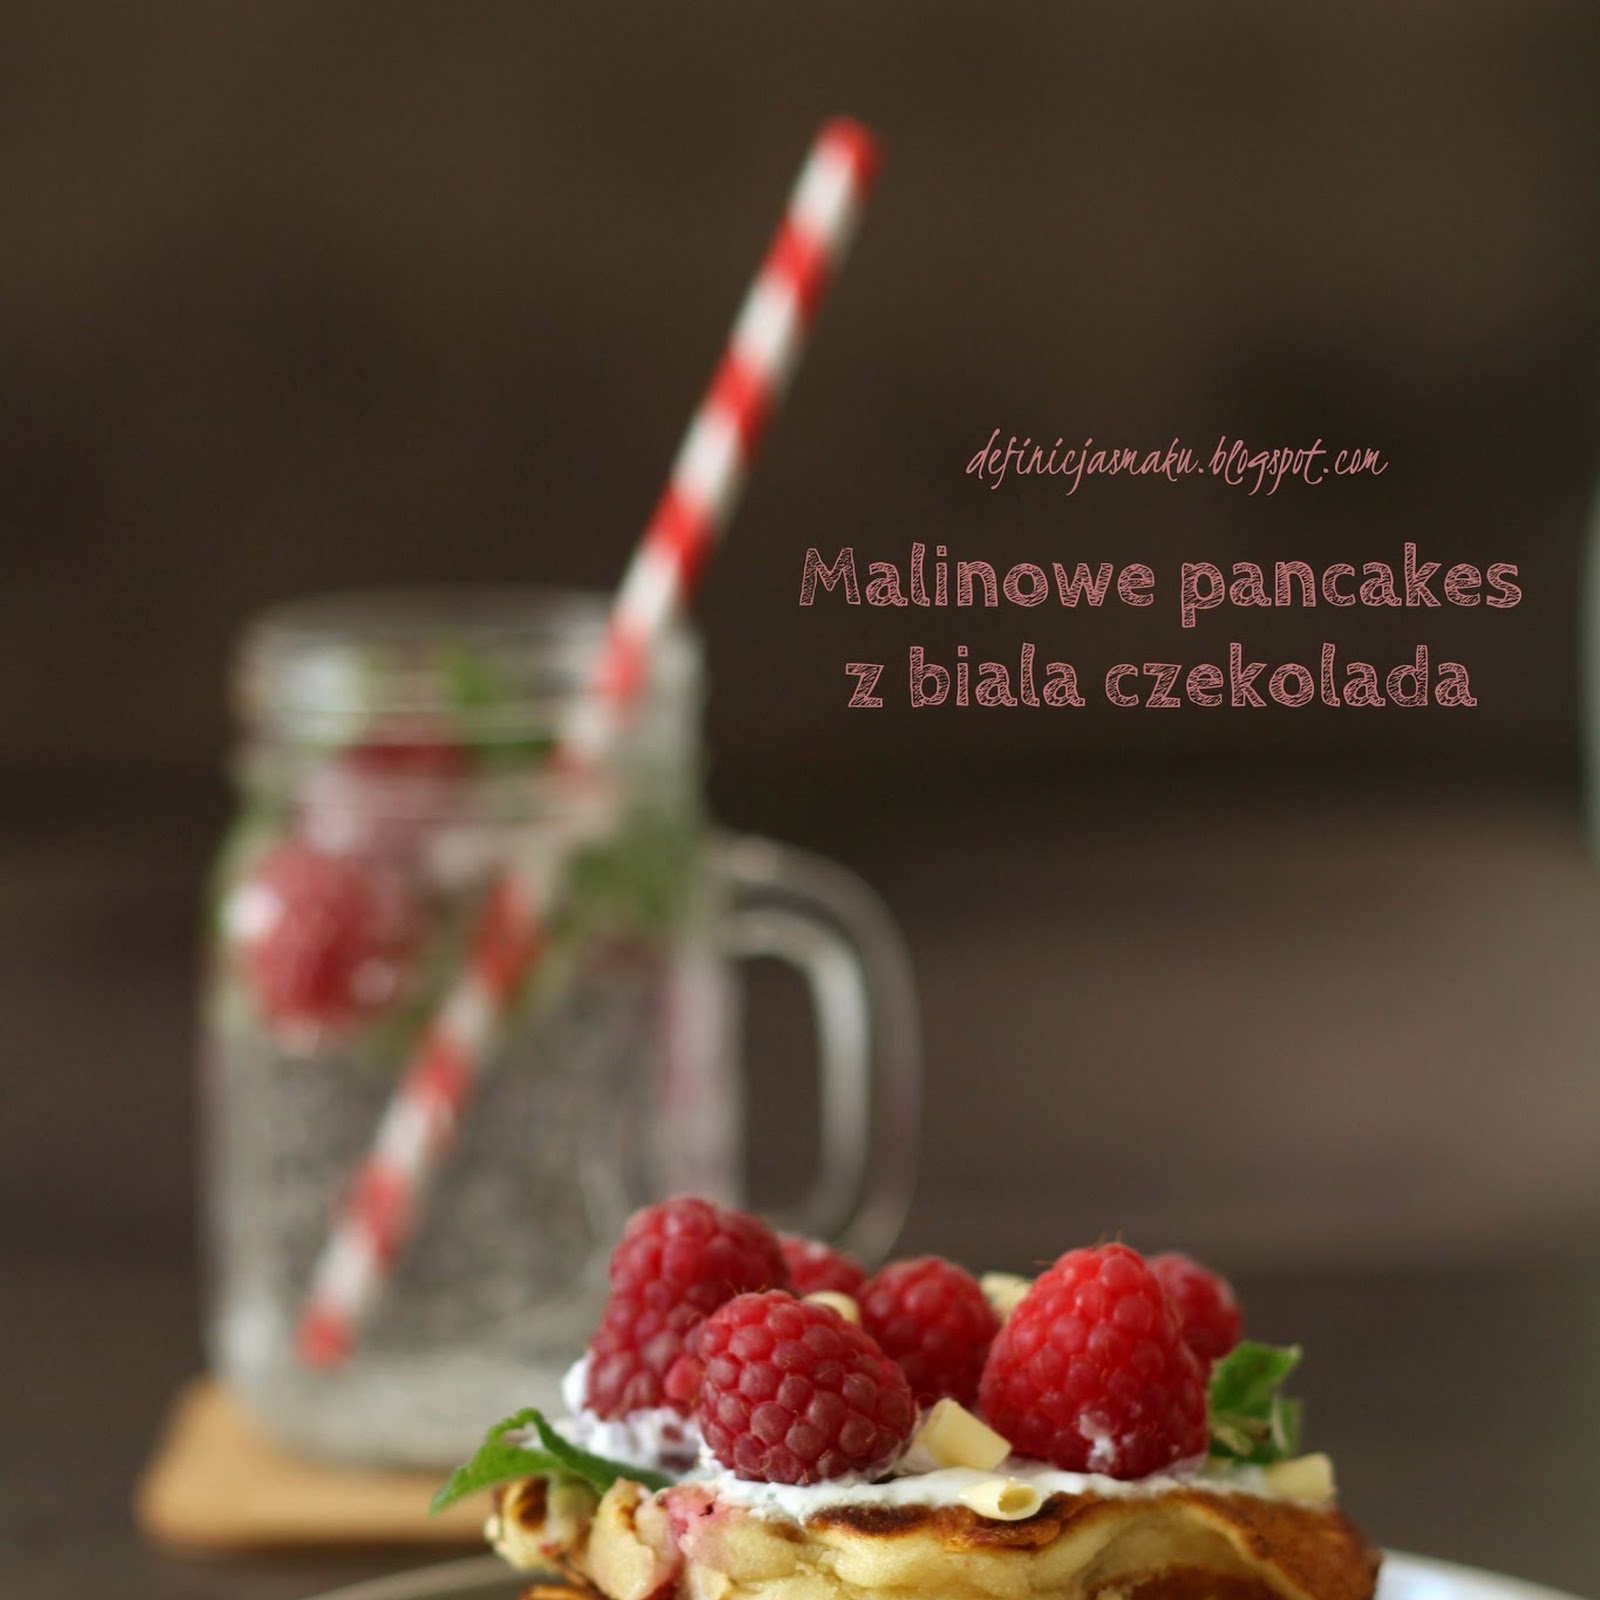 Malinowe pancakes z białą czekoladą